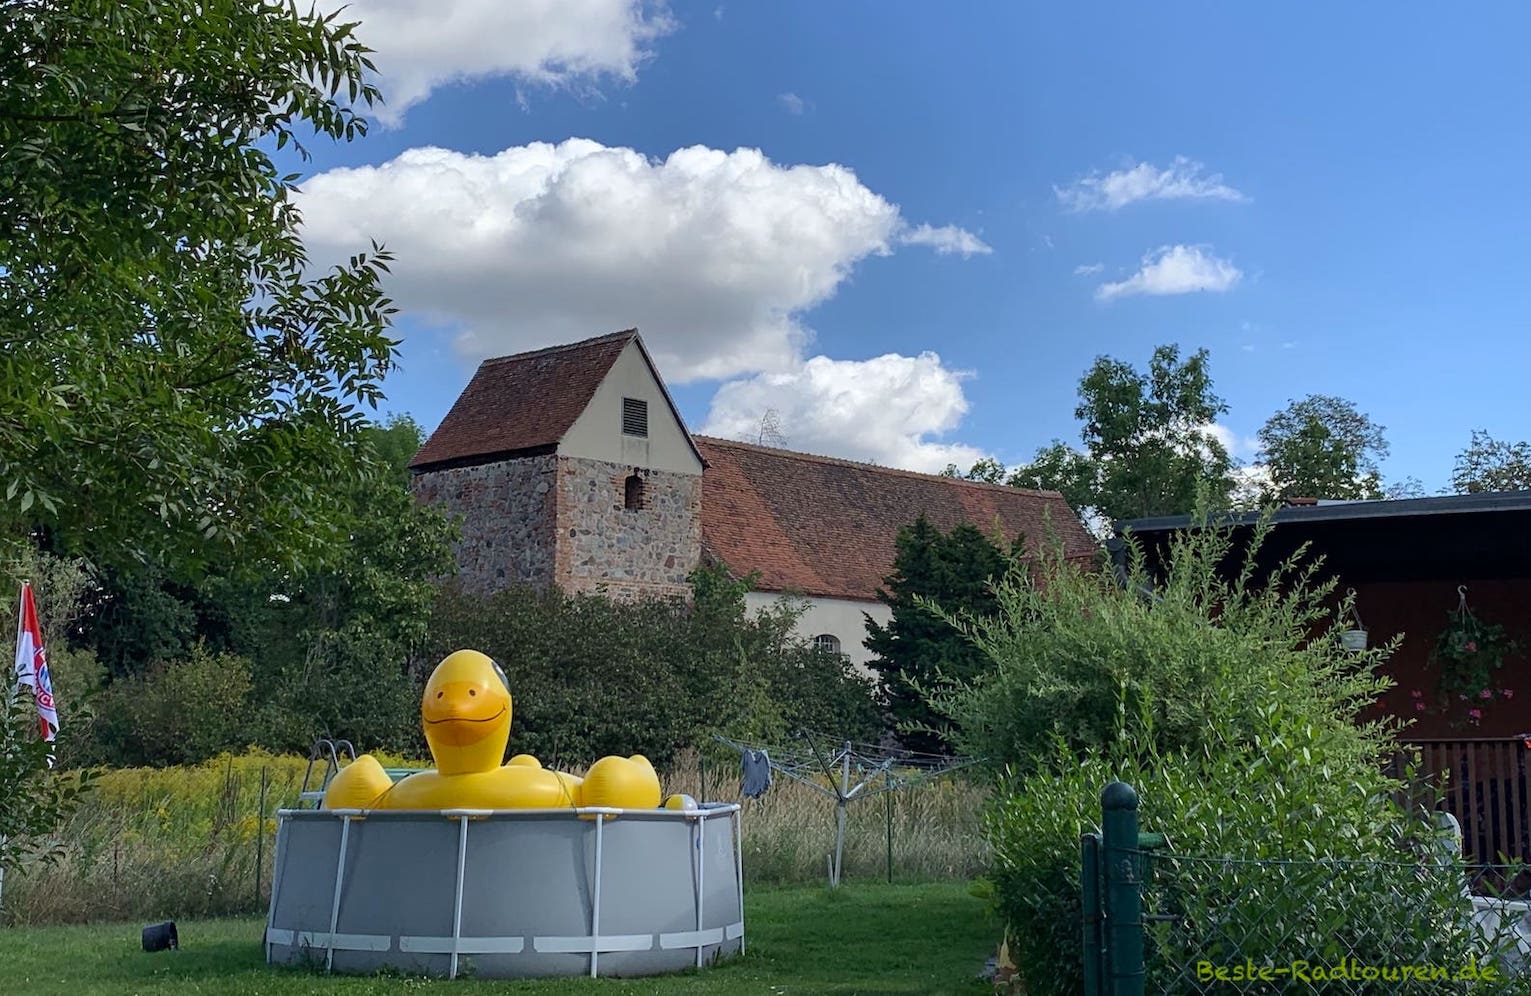 Dorf Kotzen: Garten eines Hauses mit Riesen aufblasbarer Ente im Pool